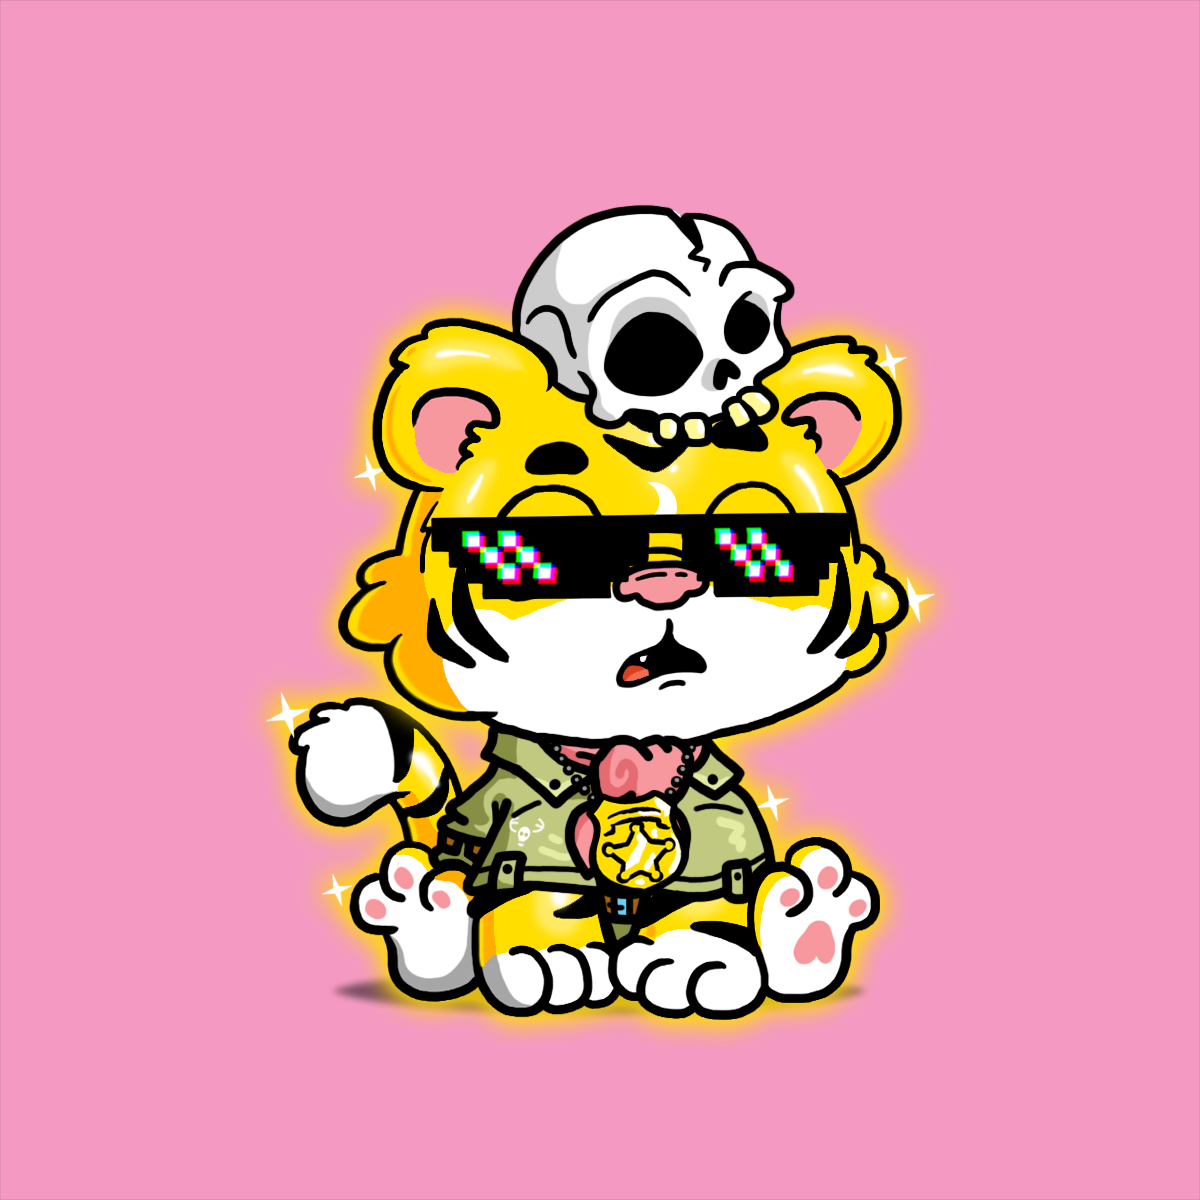 Grouchy Tiger Social Club - Grouchy Tiger Cub #1540